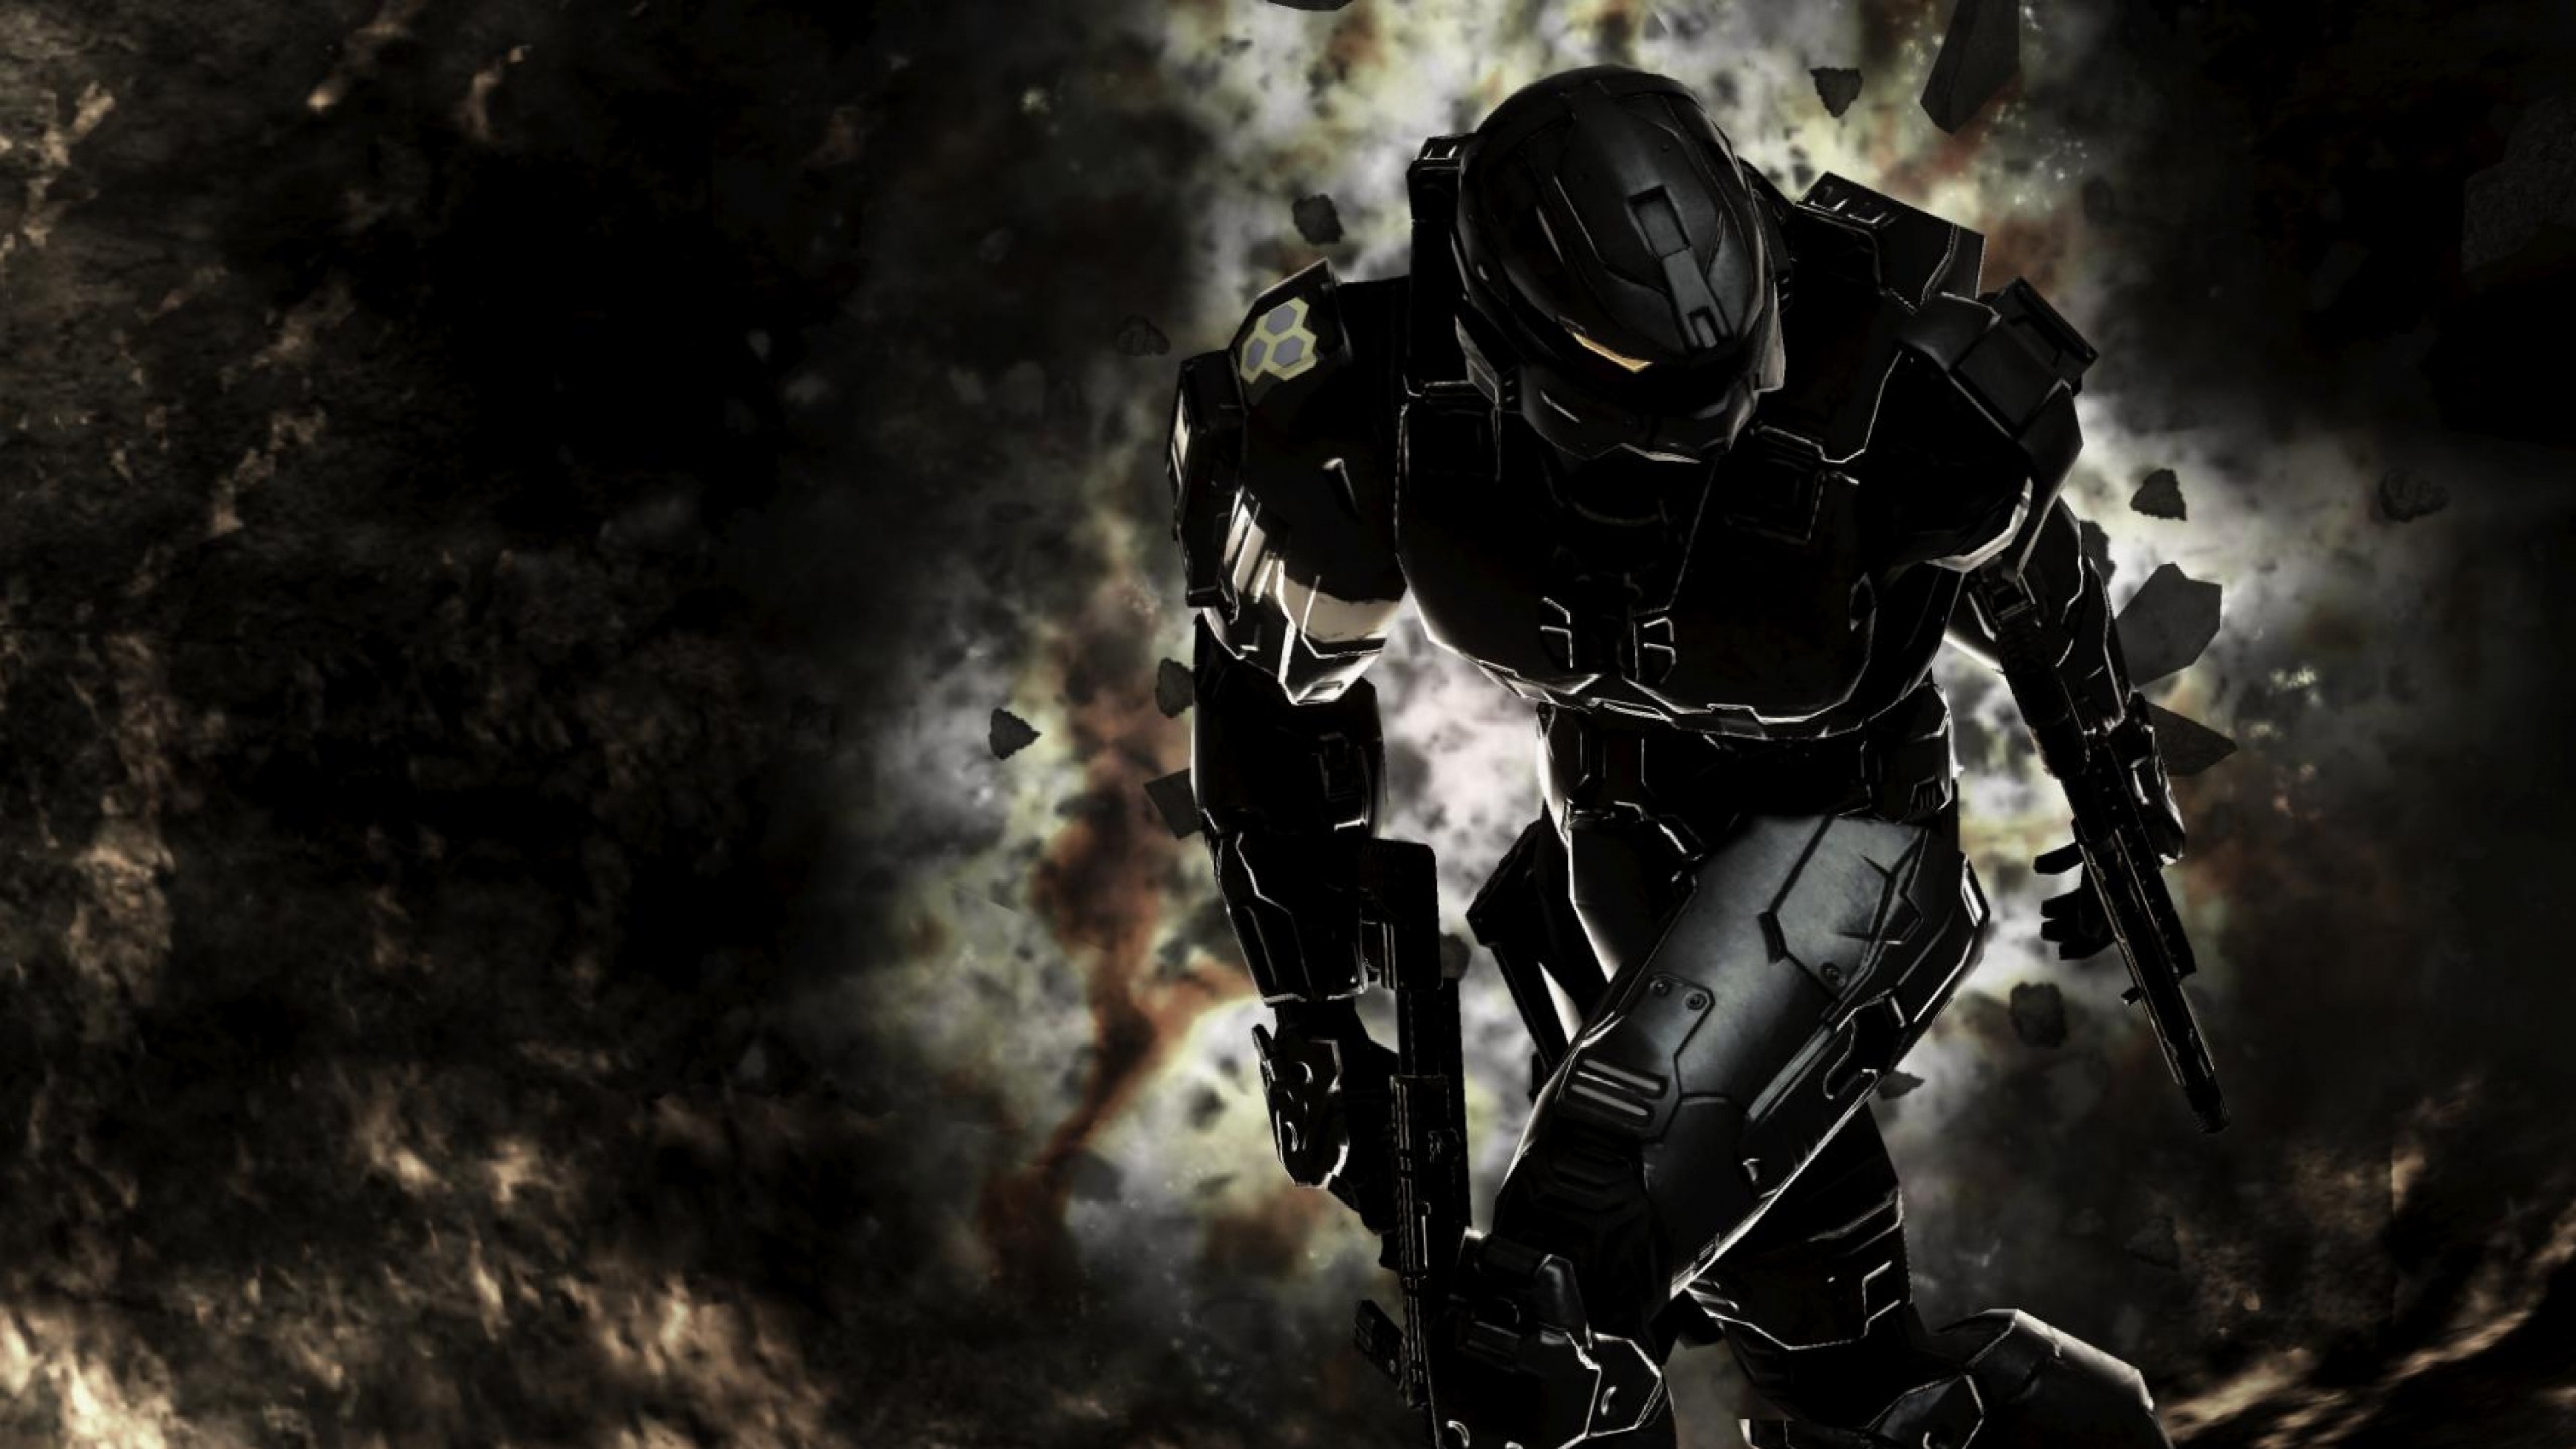 Với hình nền Halo Master chief Spartan Halo 3, bạn sẽ được trải nghiệm cảm giác trở thành chiến binh mạnh mẽ và vô địch trong vũ trụ Halo. Hình ảnh đầy sức mạnh này sẽ giúp bạn tăng cường động lực và sự tự tin để đạt được những mục tiêu của mình.